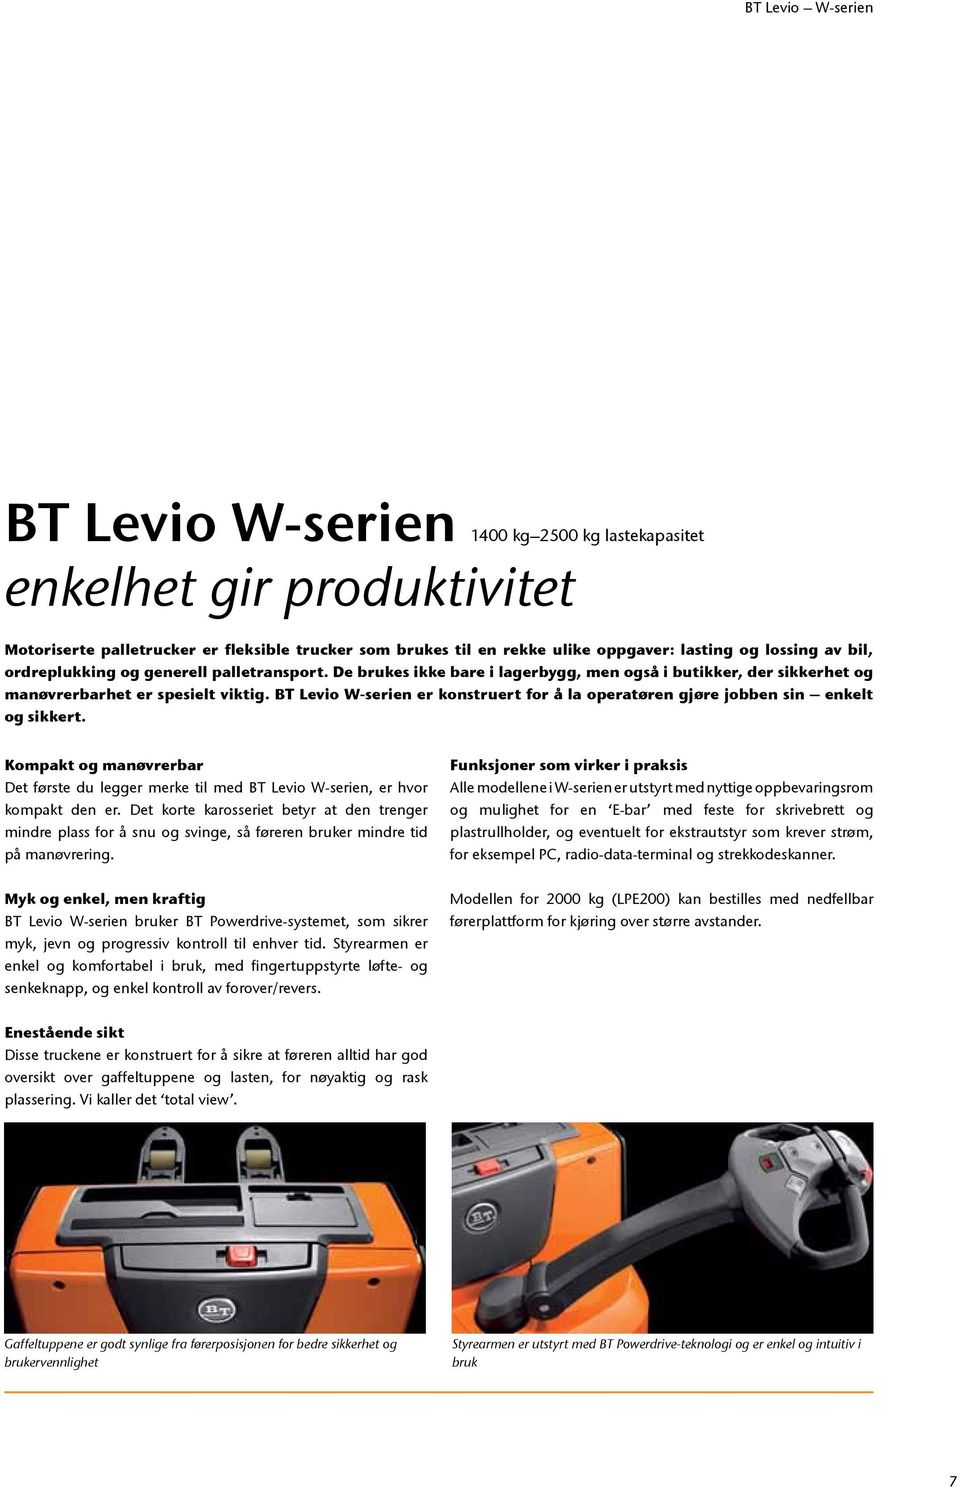 BT Levio W-serien er konstruert for å la operatøren gjøre jobben sin enkelt og sikkert. Kompakt og manøvrerbar Det første du legger merke til med BT Levio W-serien, er hvor kompakt den er.